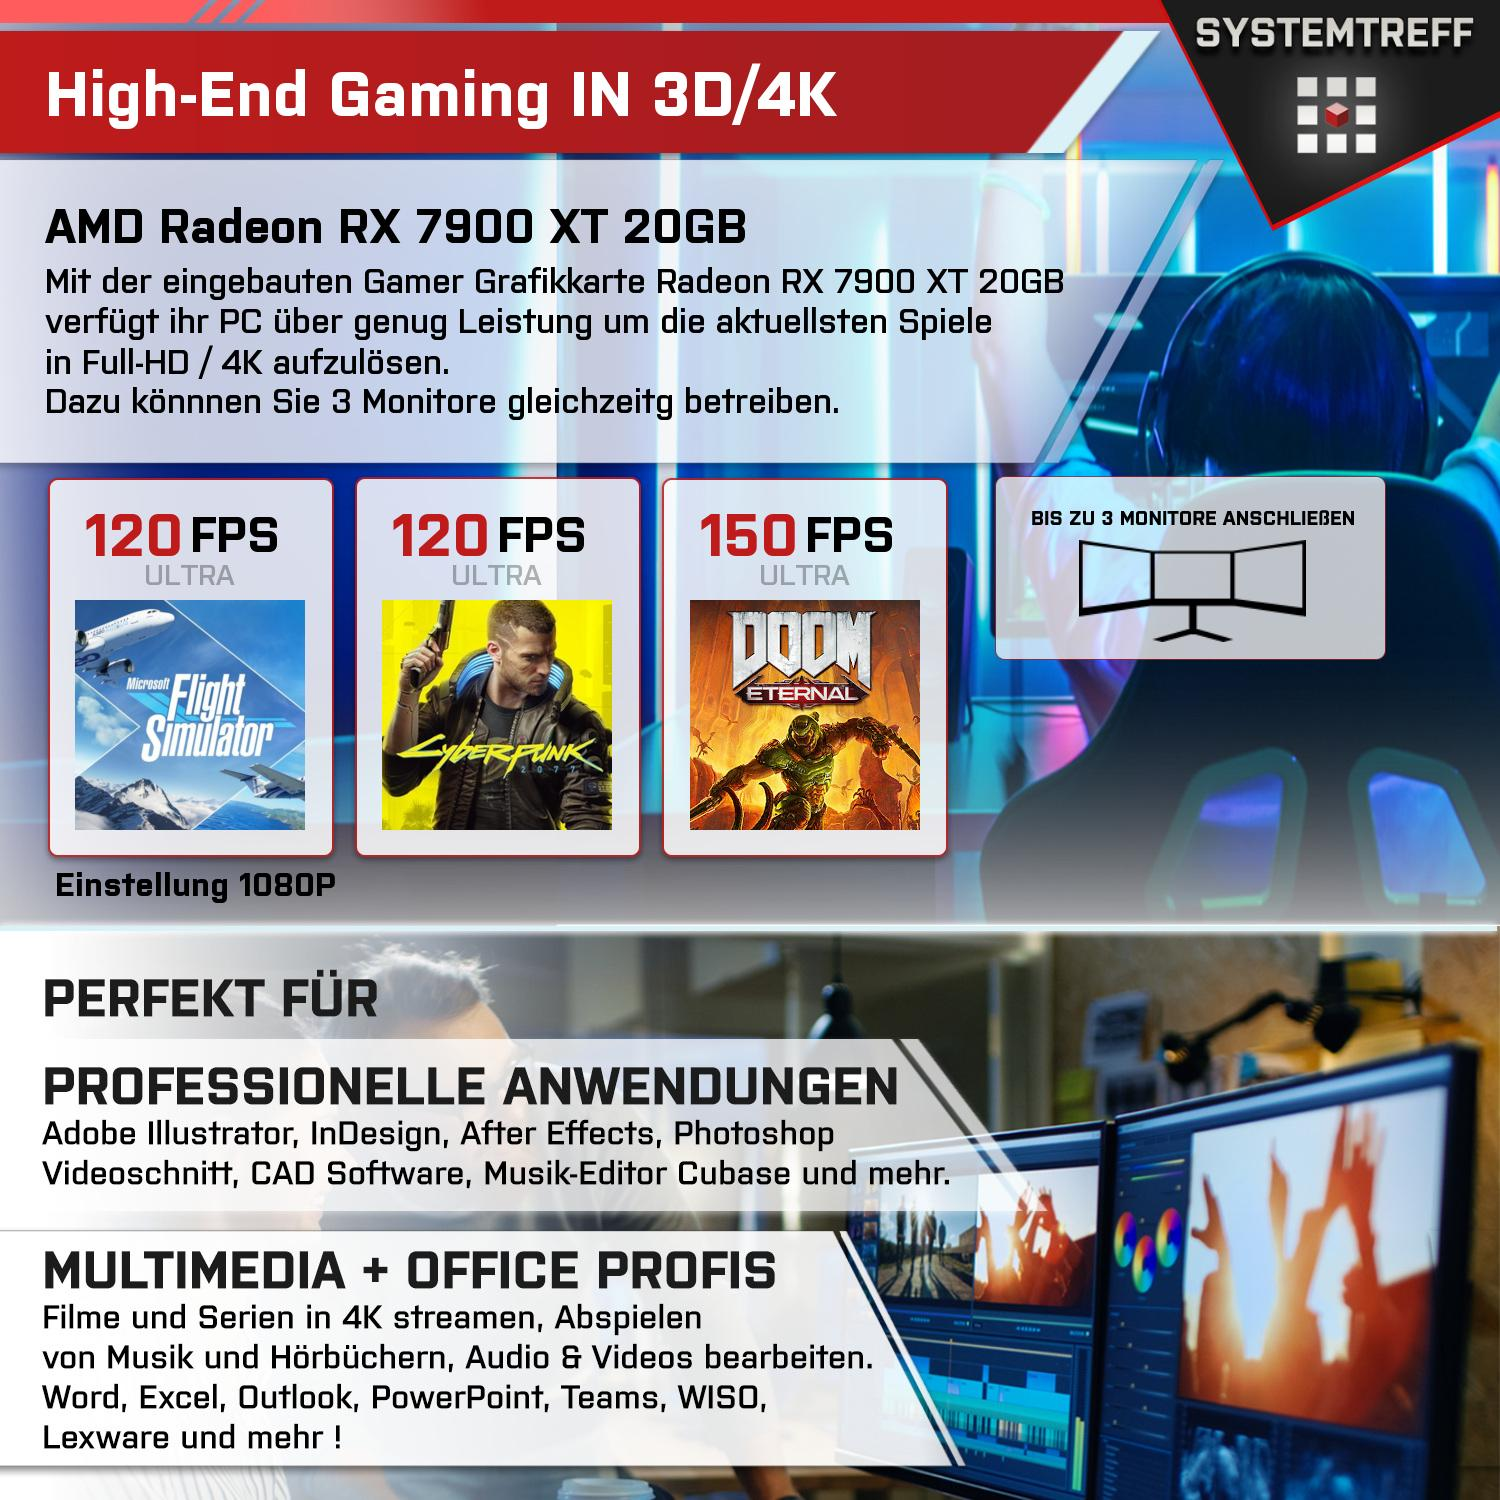 SYSTEMTREFF Gaming Komplett 32 Radeon AMD 20 XT mit Komplett mSSD, PC RAM, Ryzen GB GB 7950X, 1000 GDDR6, 7900 AMD RX 7950X GB 9 Prozessor, 20GB